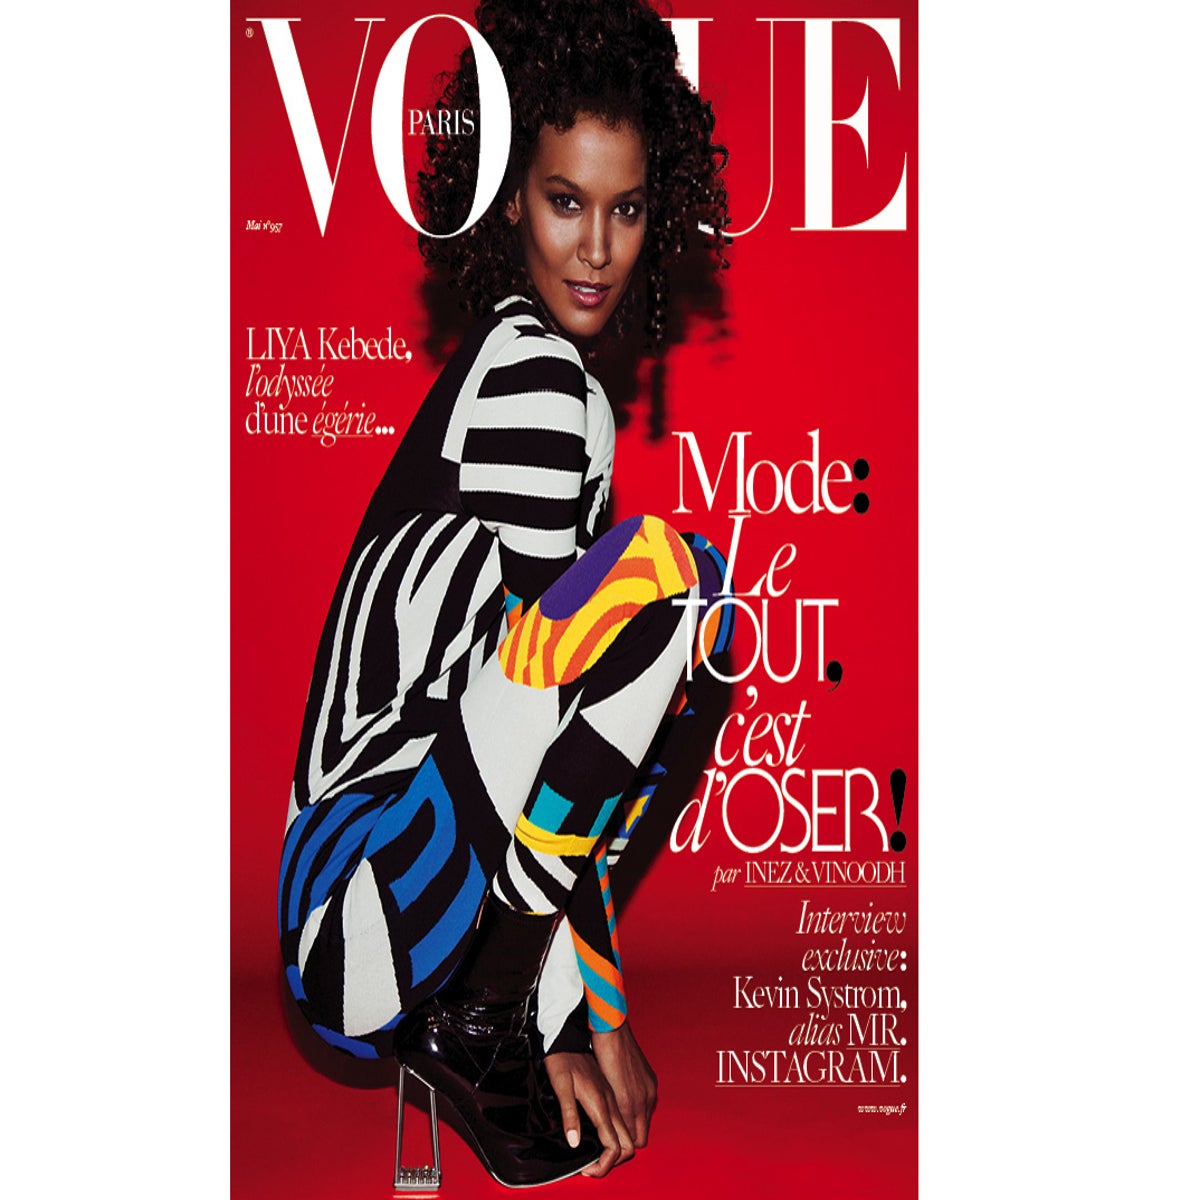 Louis Vuitton Spring 2005 Menswear Collection - Vogue